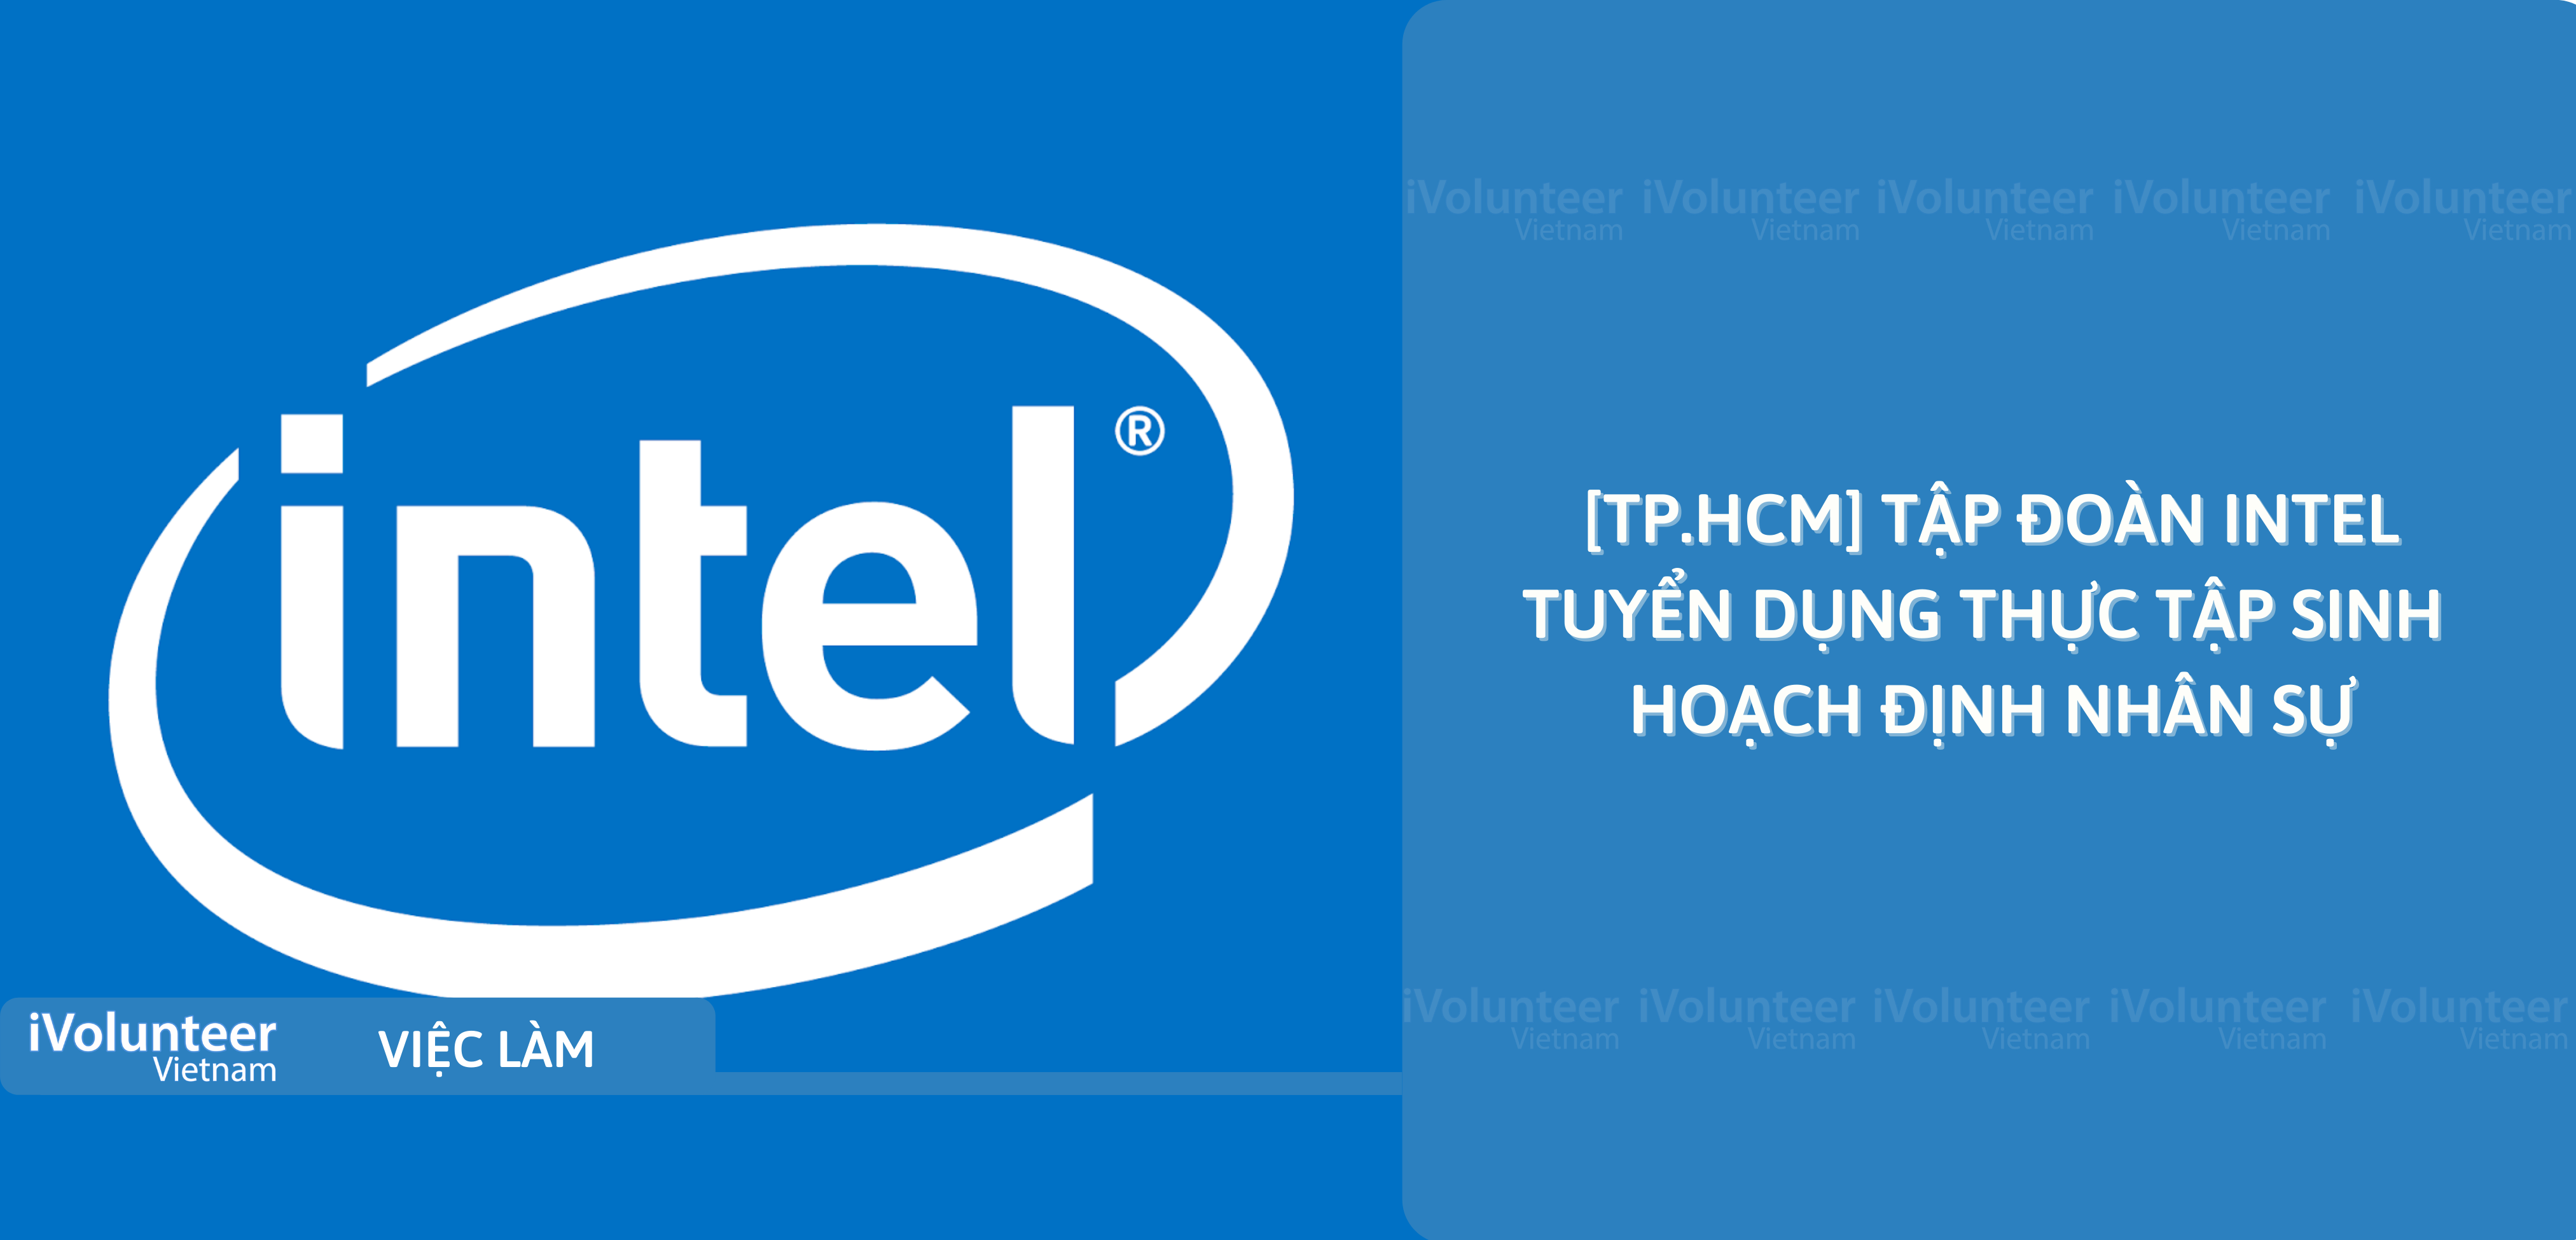 [TP.HCM] Tập Đoàn Intel Tuyển Dụng Thực Tập Sinh Hoạch Định Nhân Sự